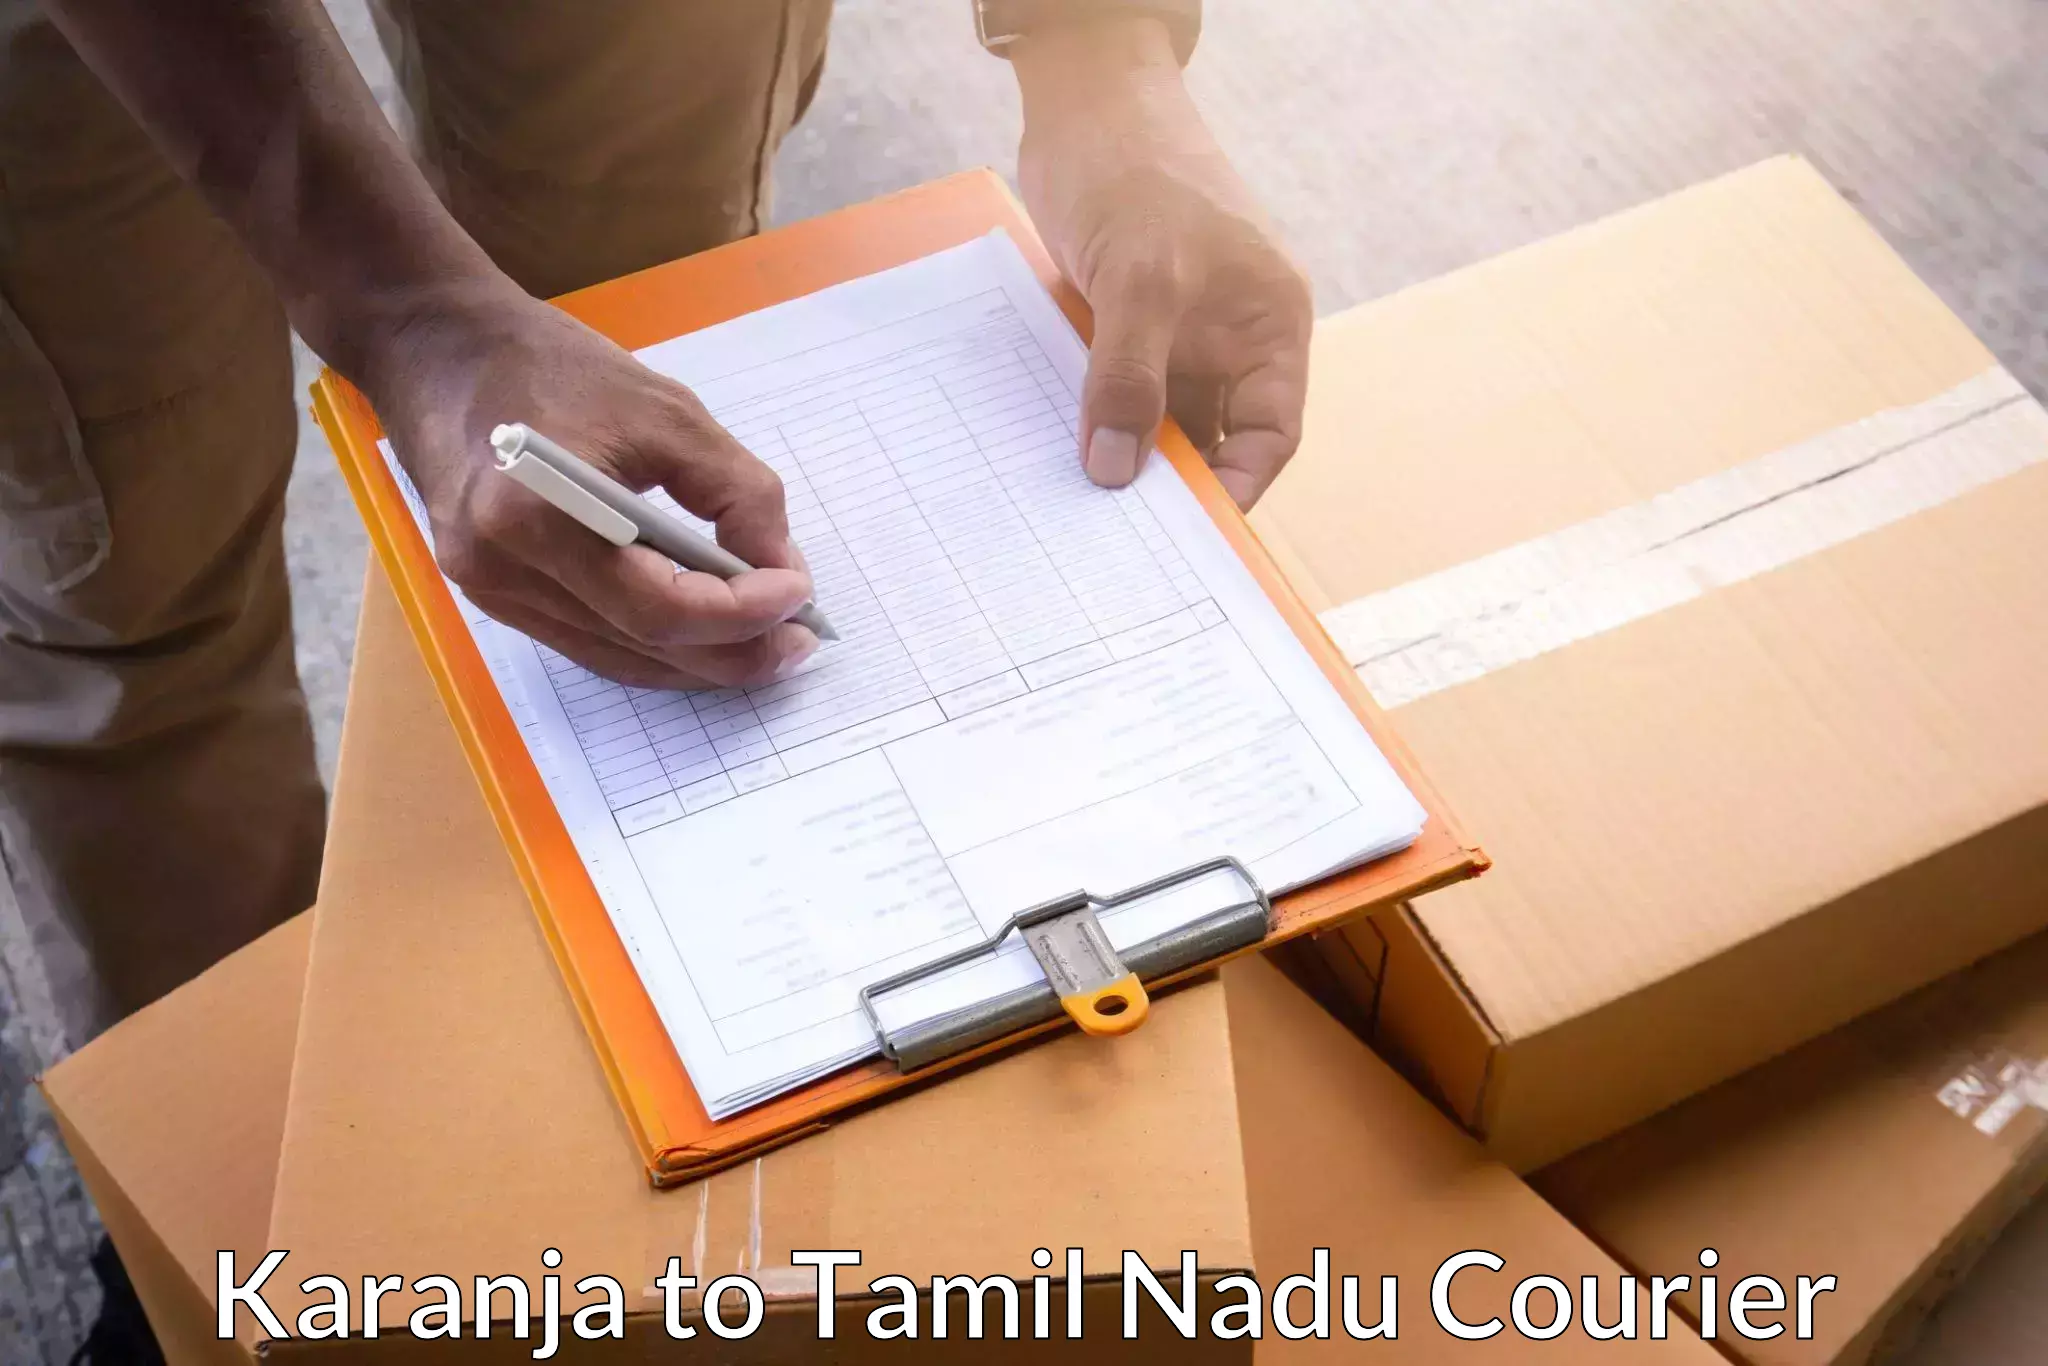 Automated shipping processes Karanja to Thiruvadanai